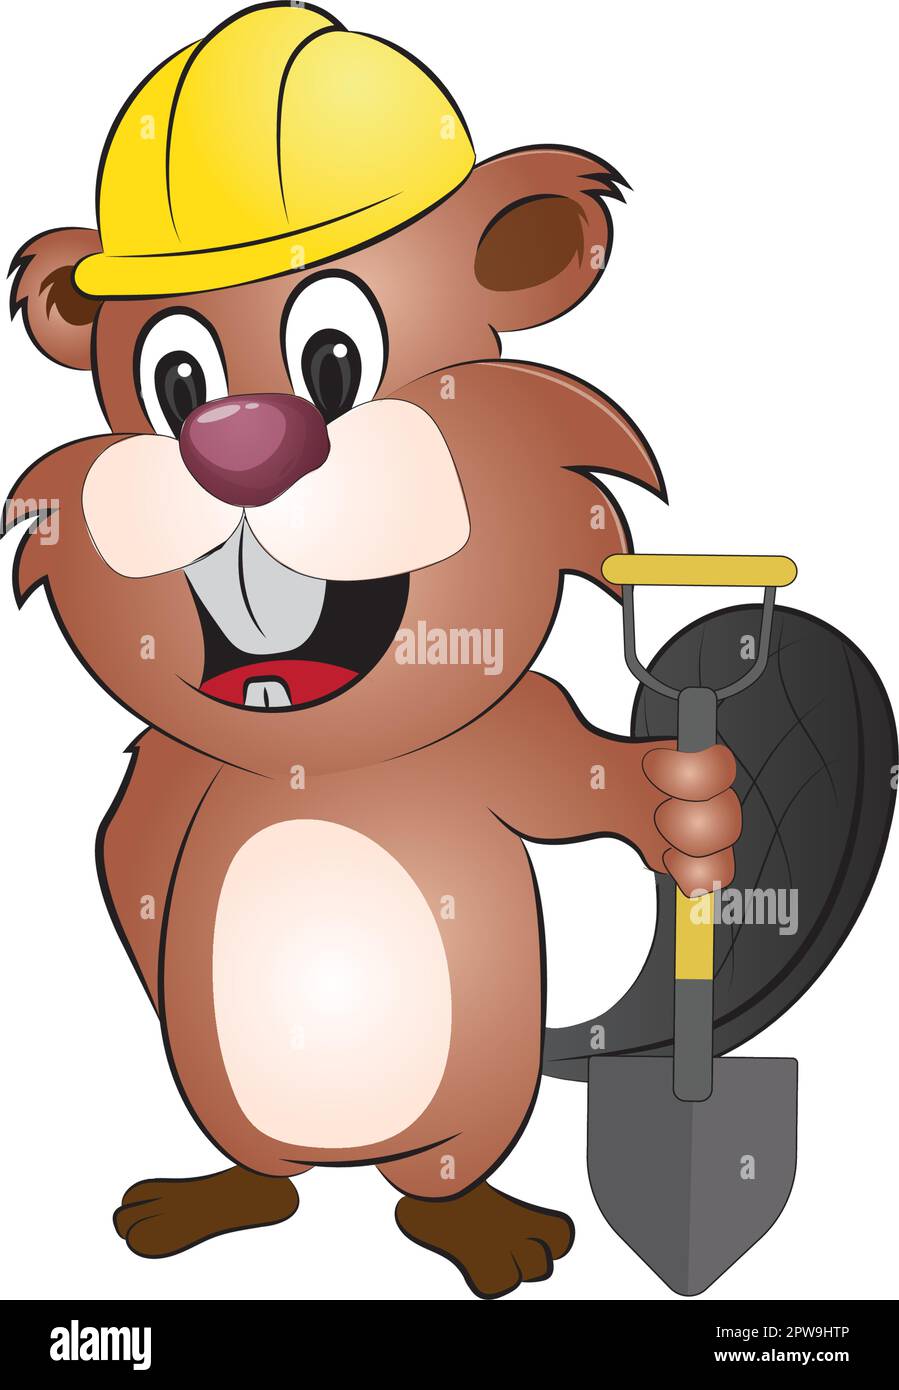 Illustration de la pelle de maintien Beaver avec expression de grinlage Illustration de Vecteur